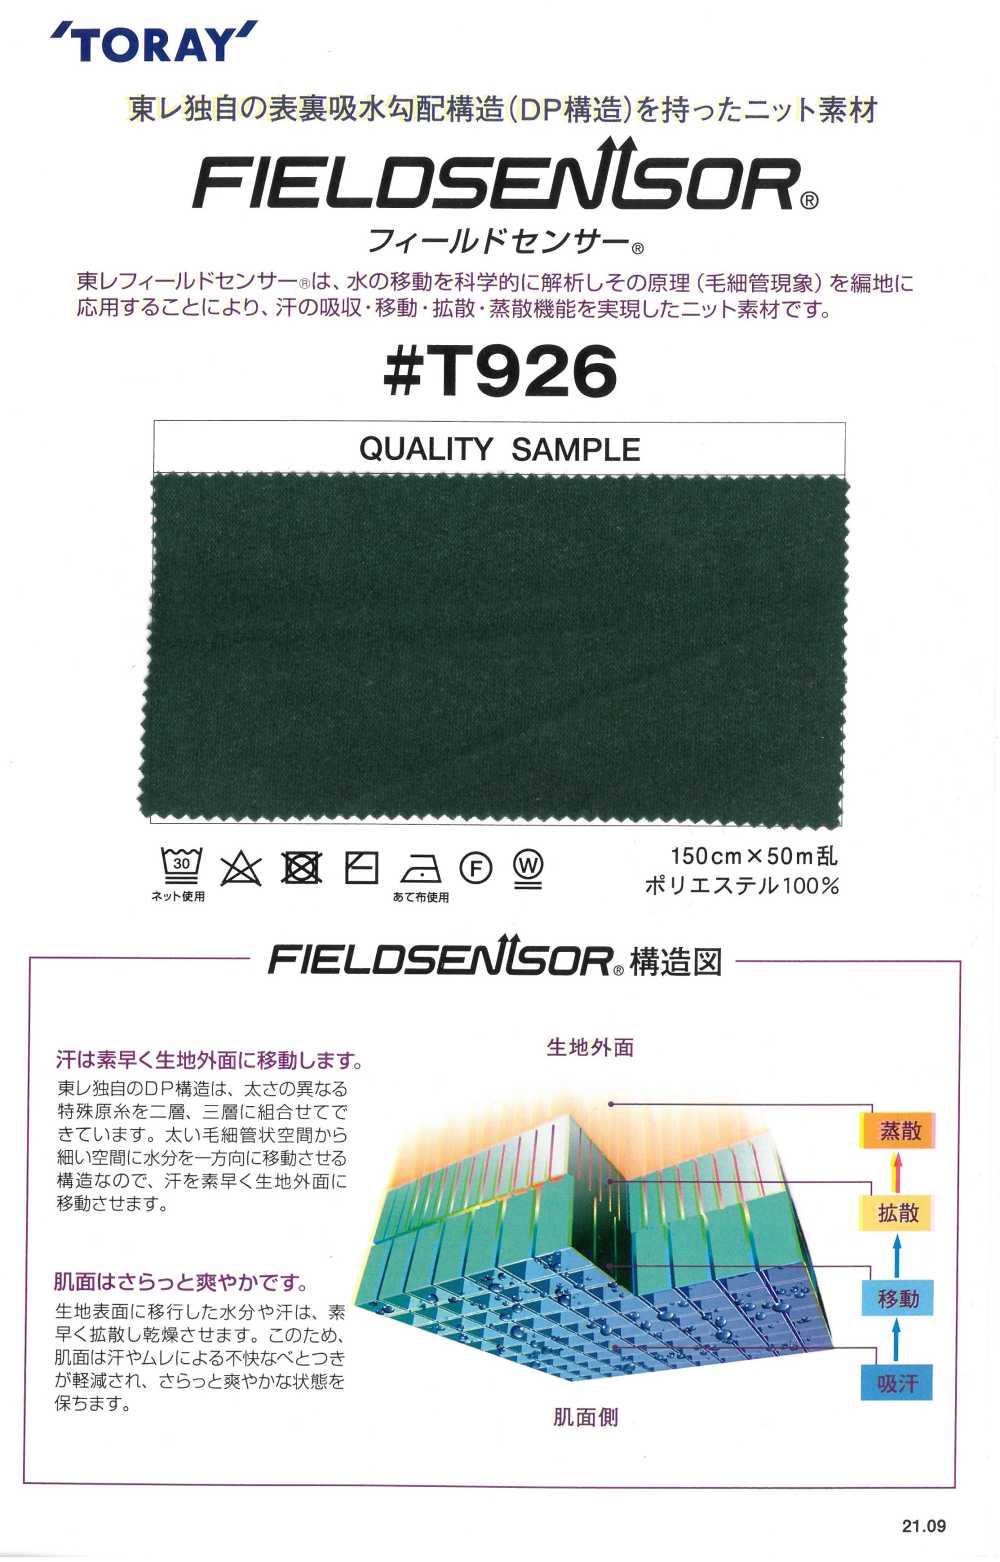 T926 Materiale In Maglia TORAY Field Sensor® Per Abbigliamento Interno (Tipo Fuzzy)[Tessile / Tessuto] Tamurakoma